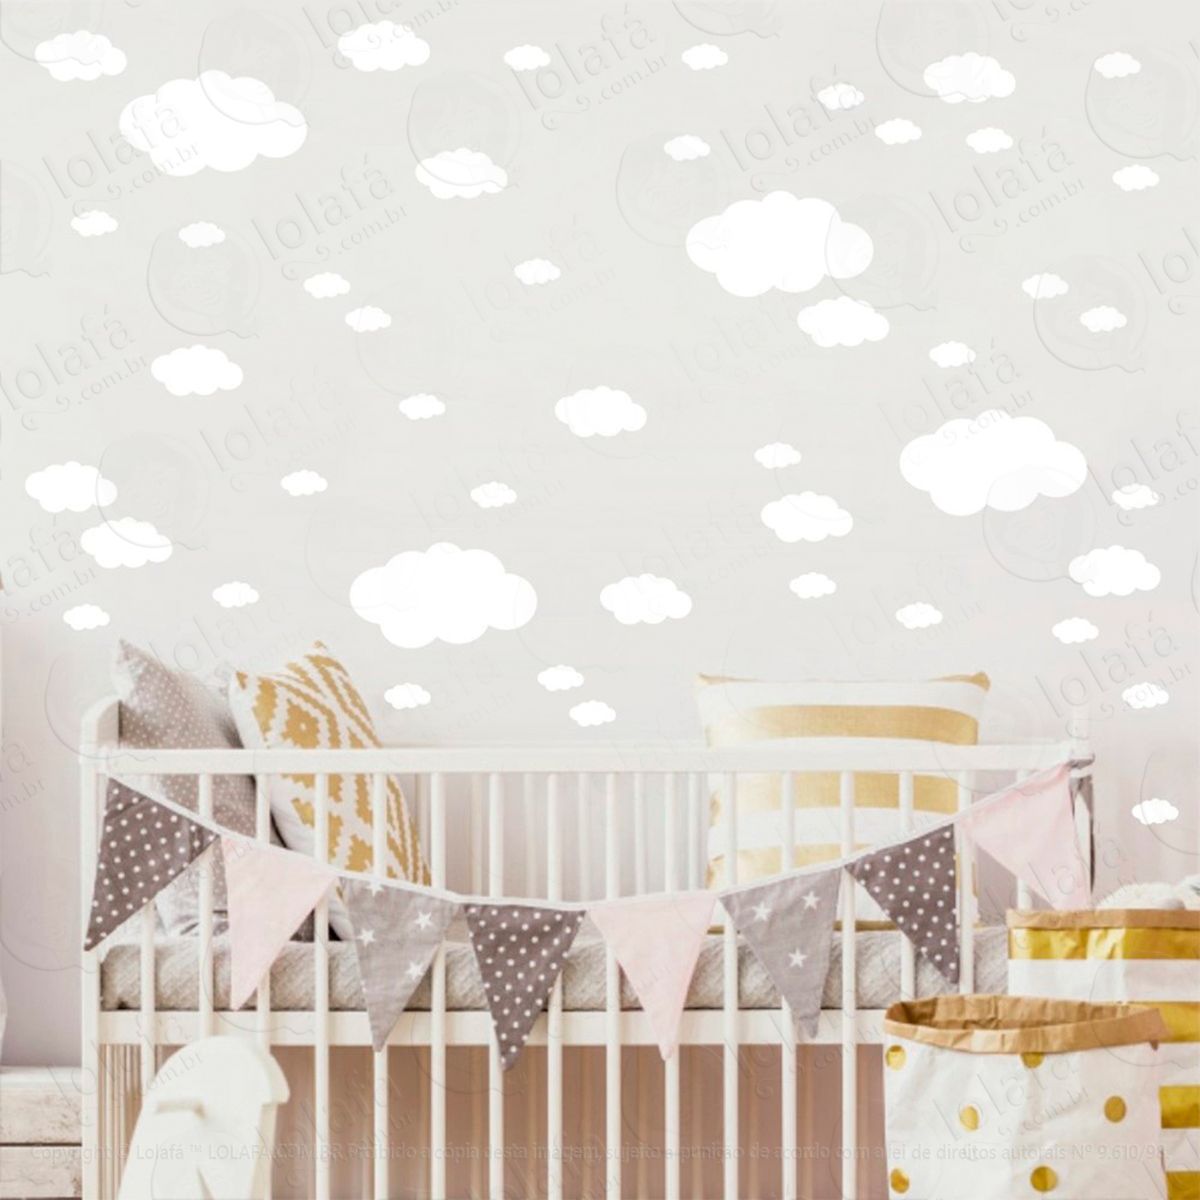 adesivos nuvens 62 peças adesivos para quarto de bebê infantil - mod:1026